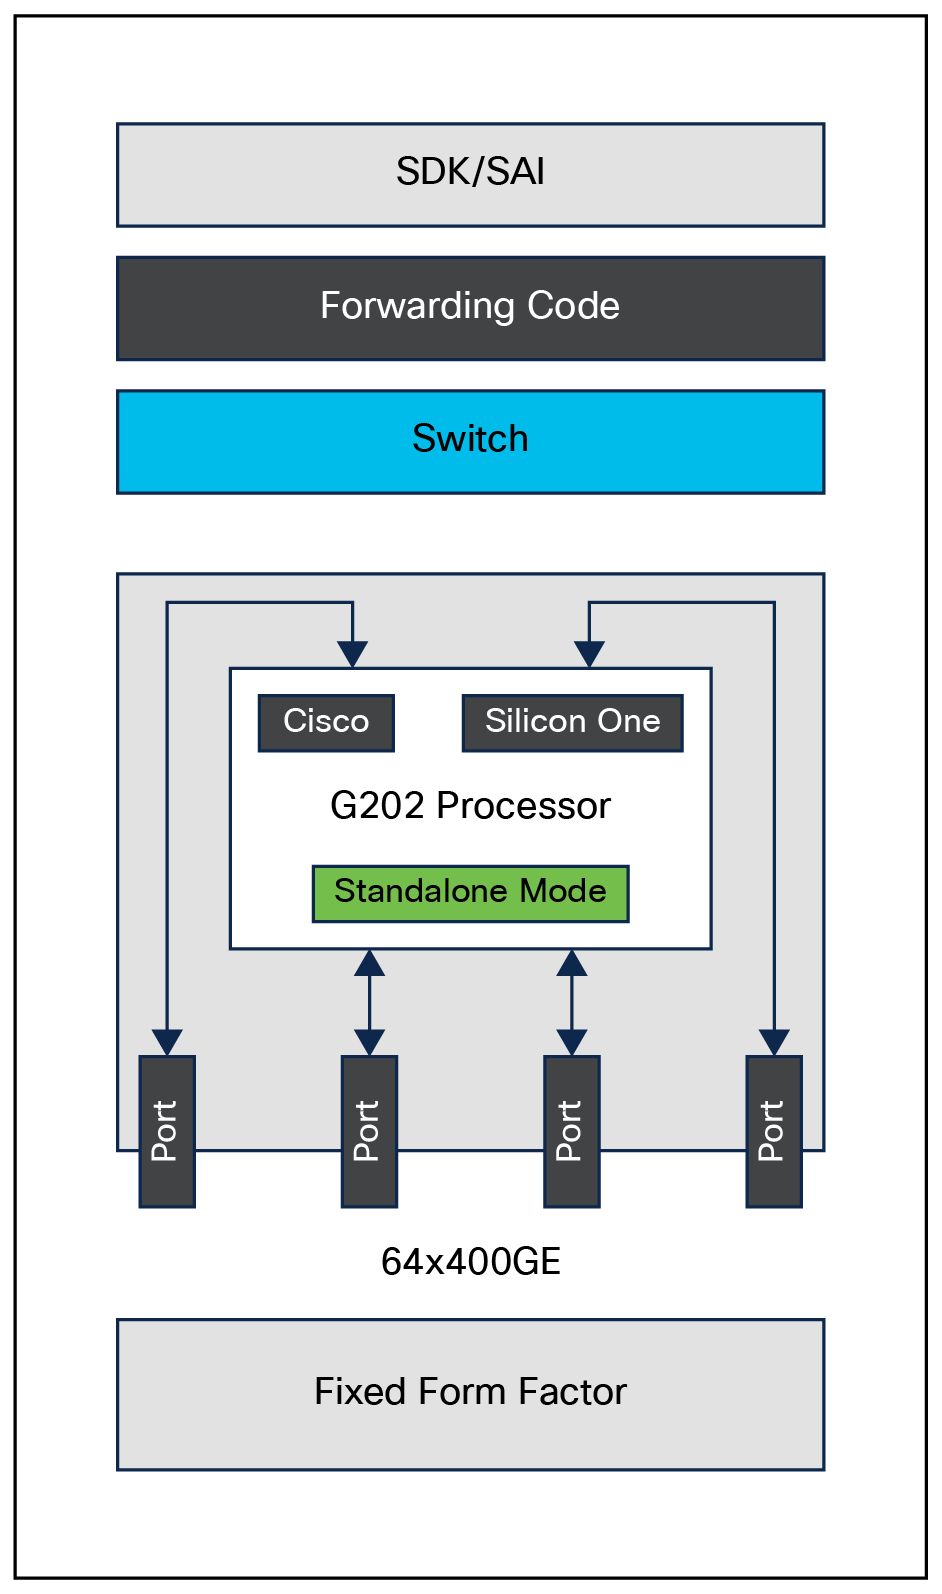 Cisco Silicon One G202 processor